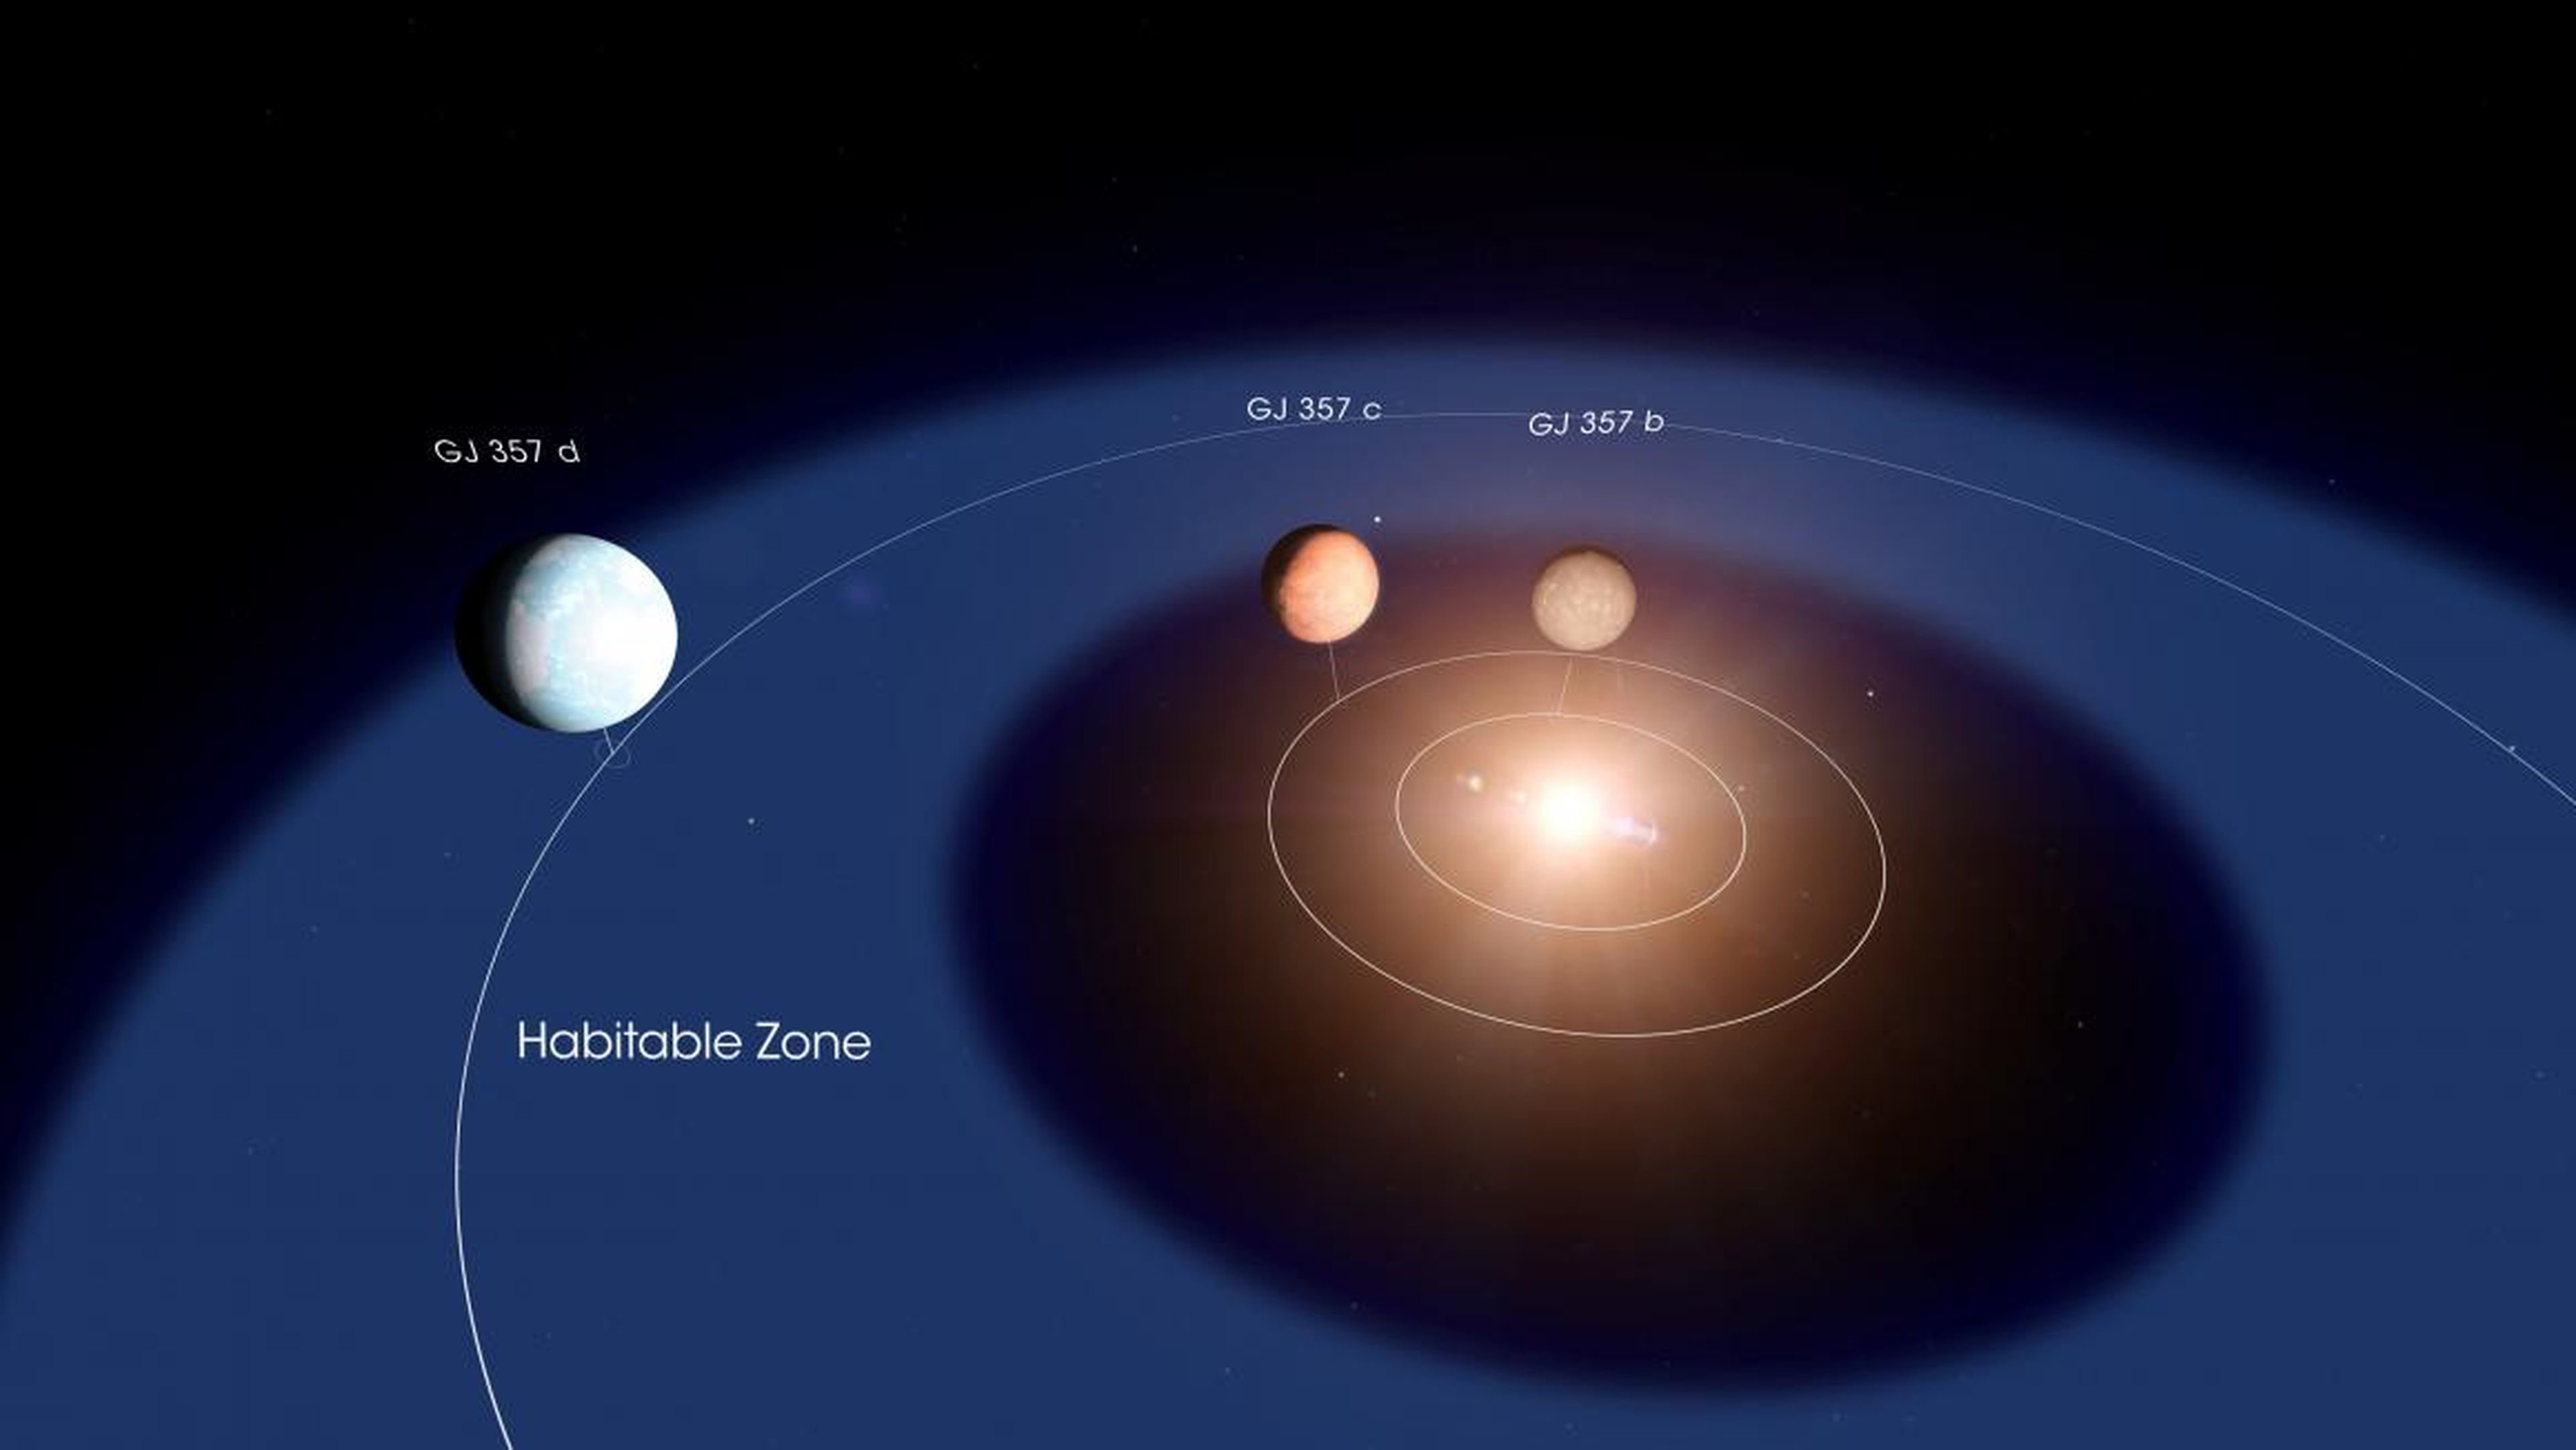 Un diagrama del diseño del sistema estelar GJ 357. El planeta d orbita dentro de la zona habitable de la estrella, la región donde puede existir agua líquida en la superficie de un planeta rocoso.